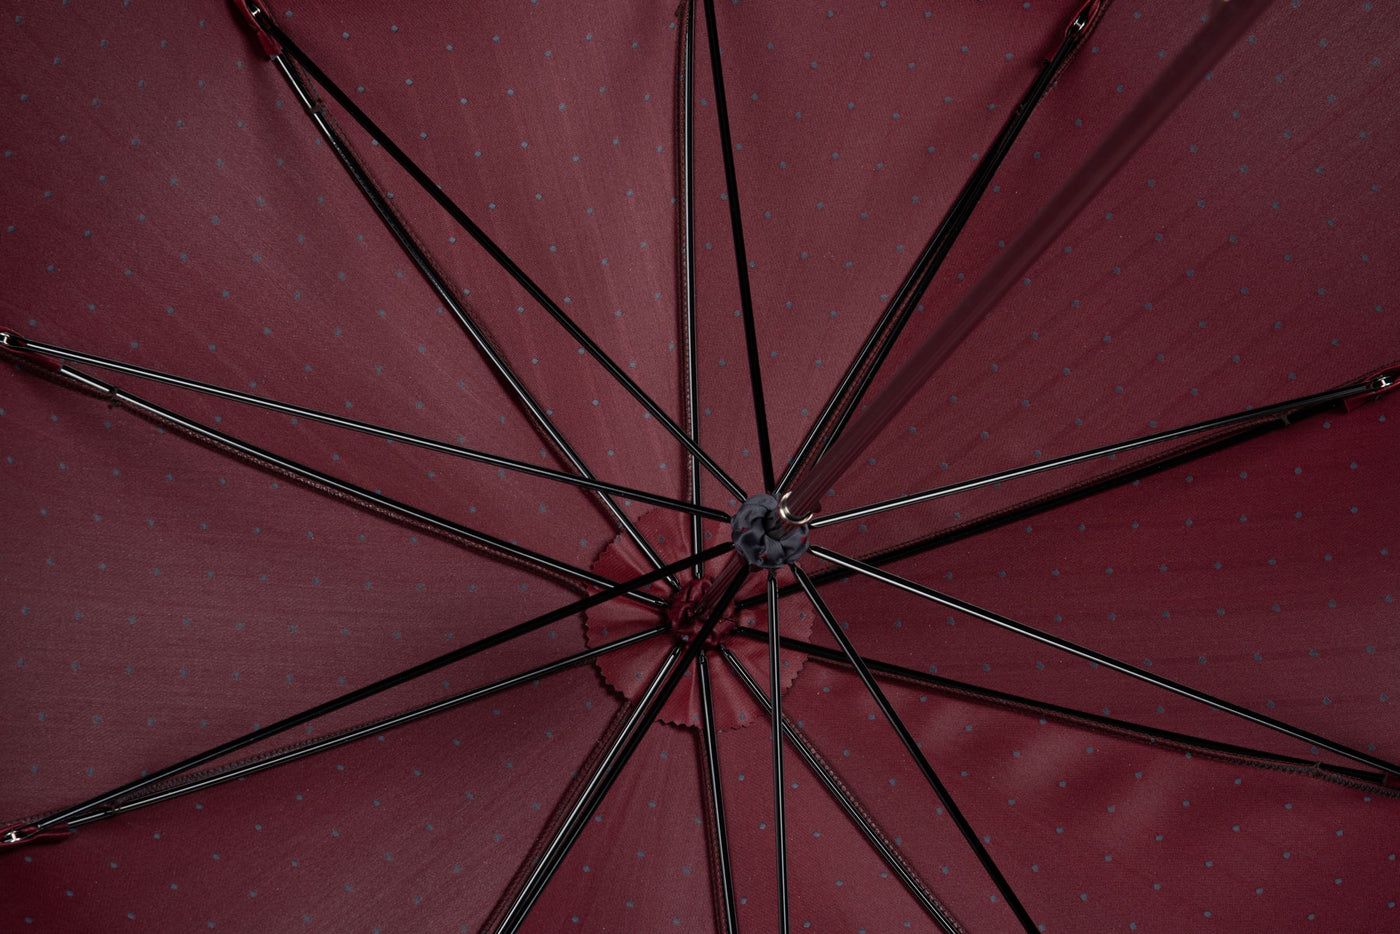 Francesco Maglia Umbrella - Grey & Burgundy Dots